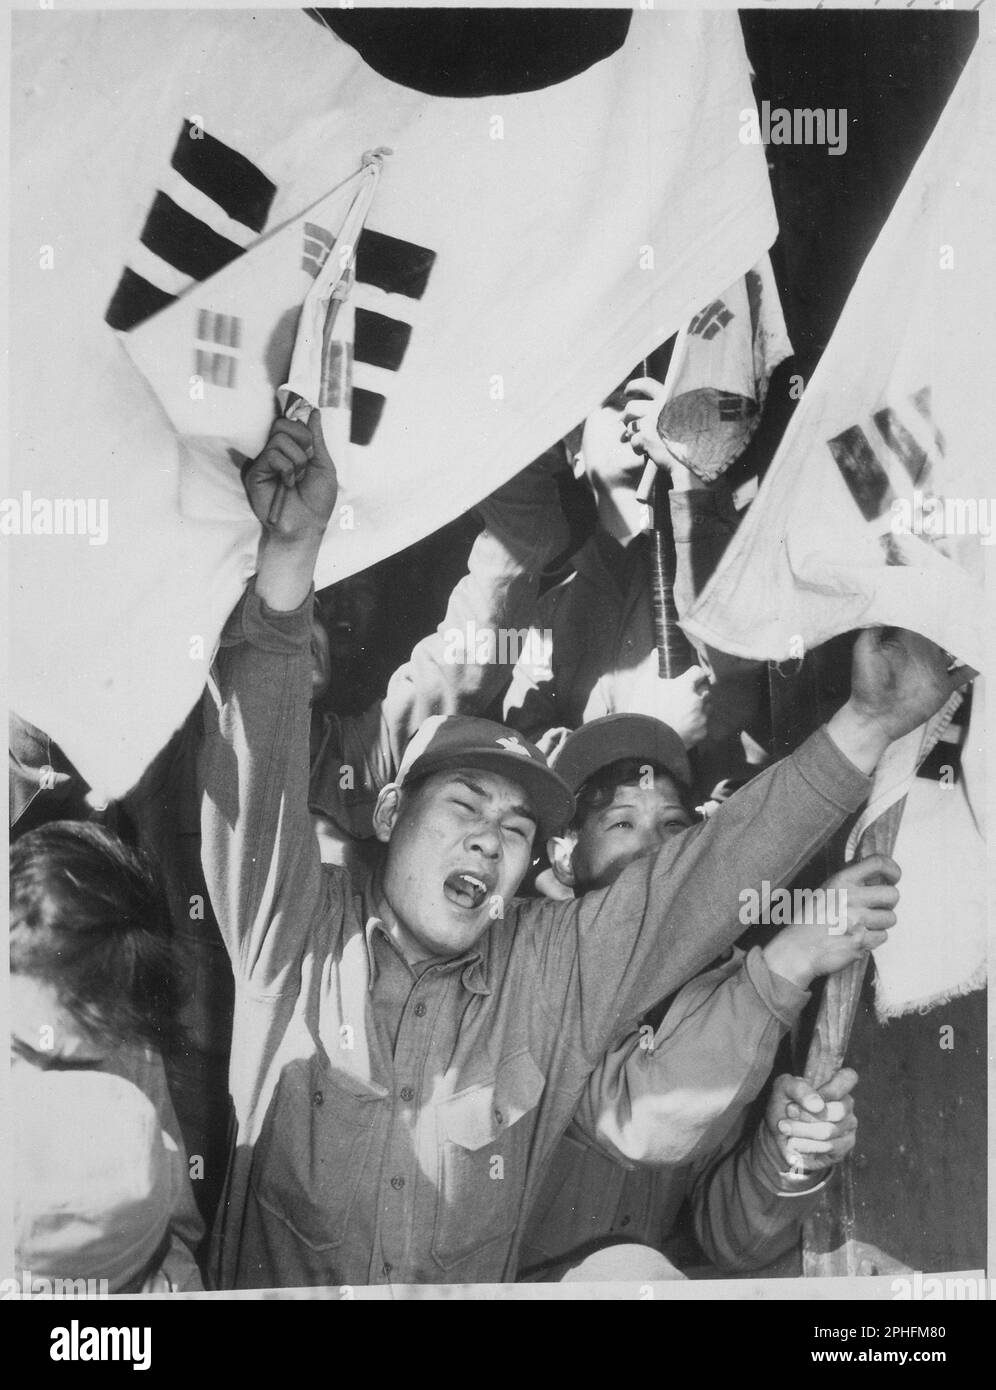 Questo anticomunista nordcoreano appena rilasciato da un campo di prigionia di guerra sta servendo come una sorta di cheerleader per i compagni ex prigionieri di guerra mentre gridano la loro gioia di raggiungere Seoul. Le bandiere sono della Repubblica di Corea del Sud, circa 1954. (Foto di United States Information Agency) Foto Stock